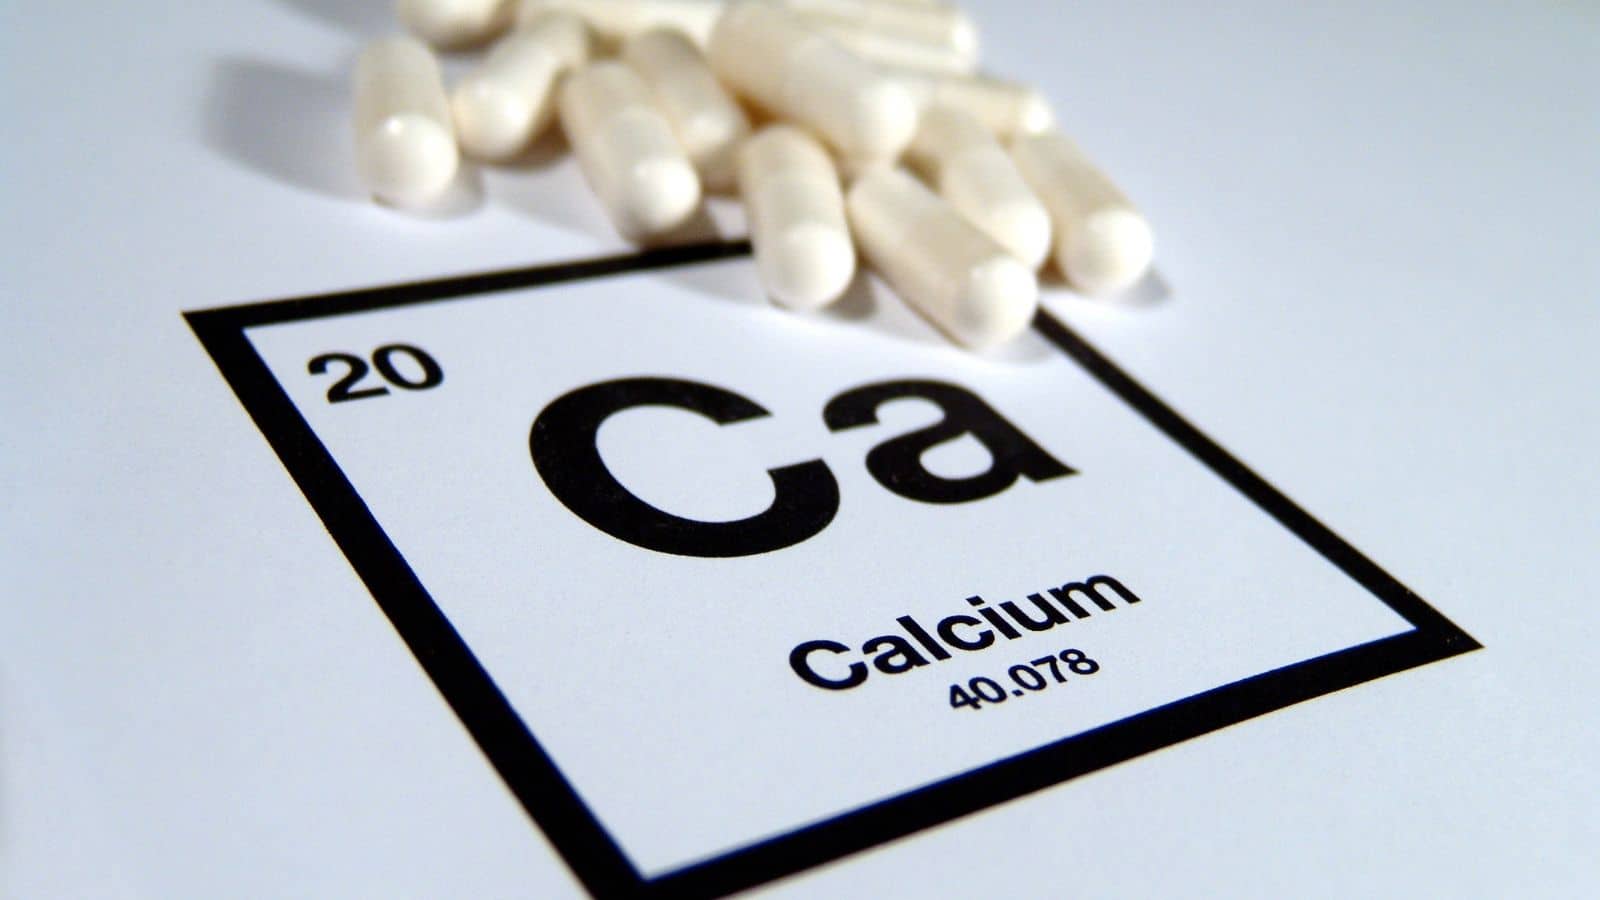 Calcium symbol and vitamins.